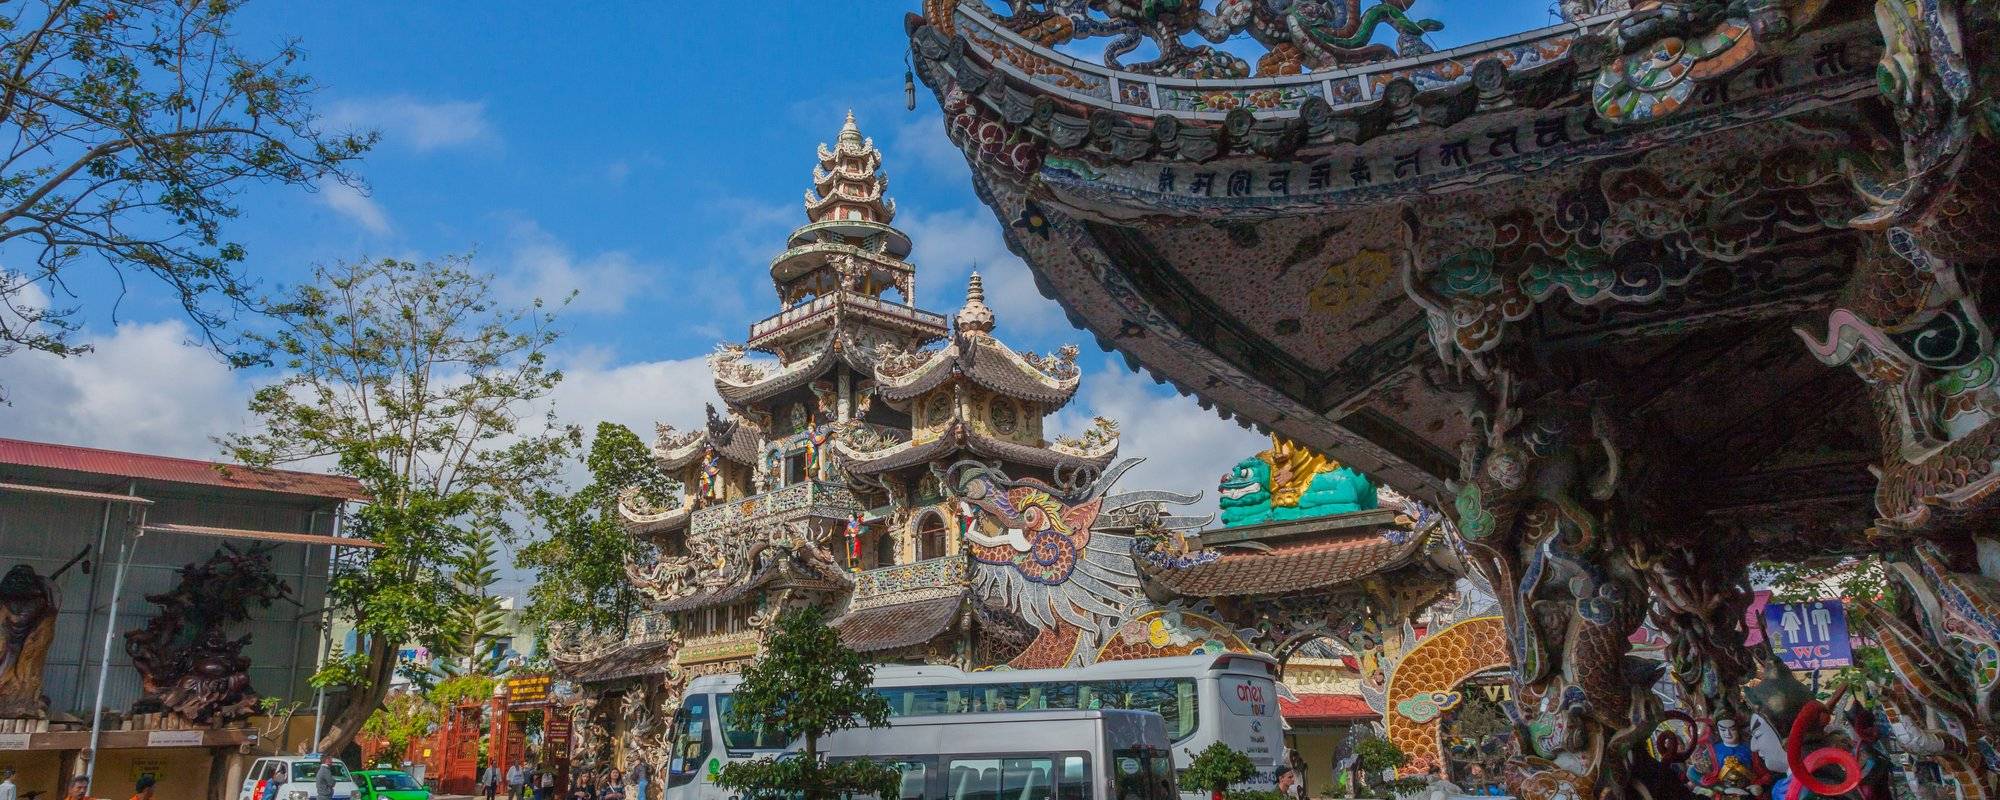 Linh Phuoc Pagoda. Where dragons live